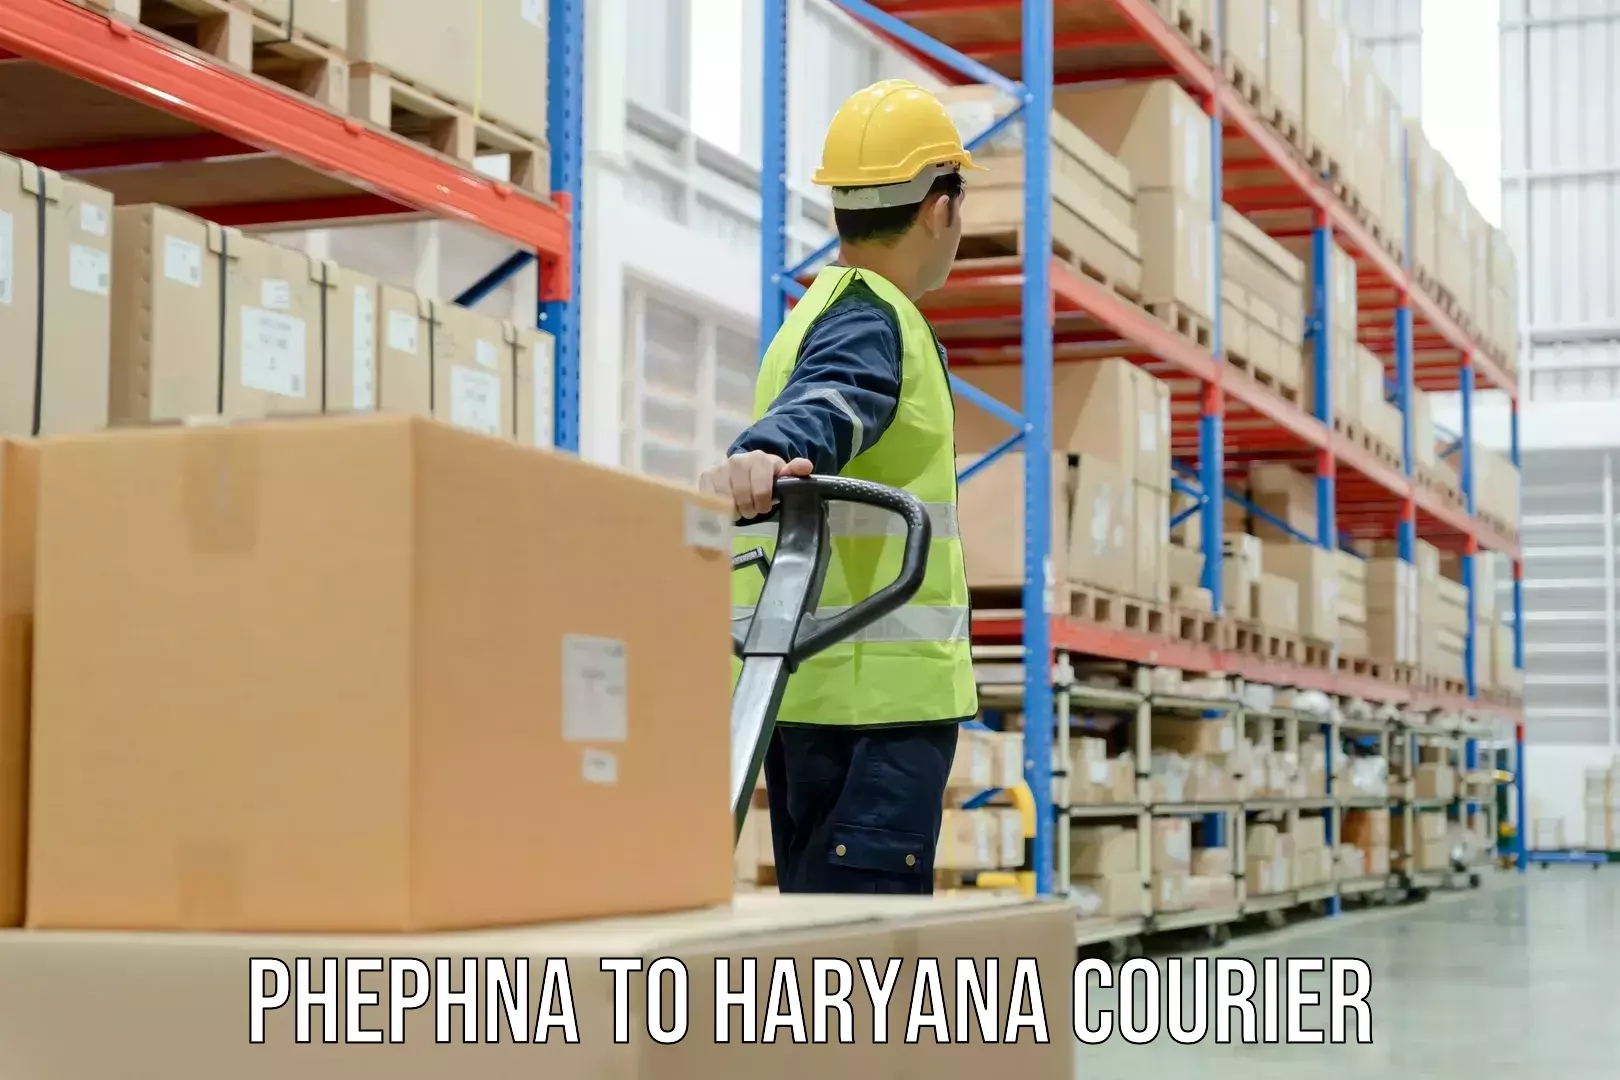 Business shipping needs Phephna to IIIT Sonepat